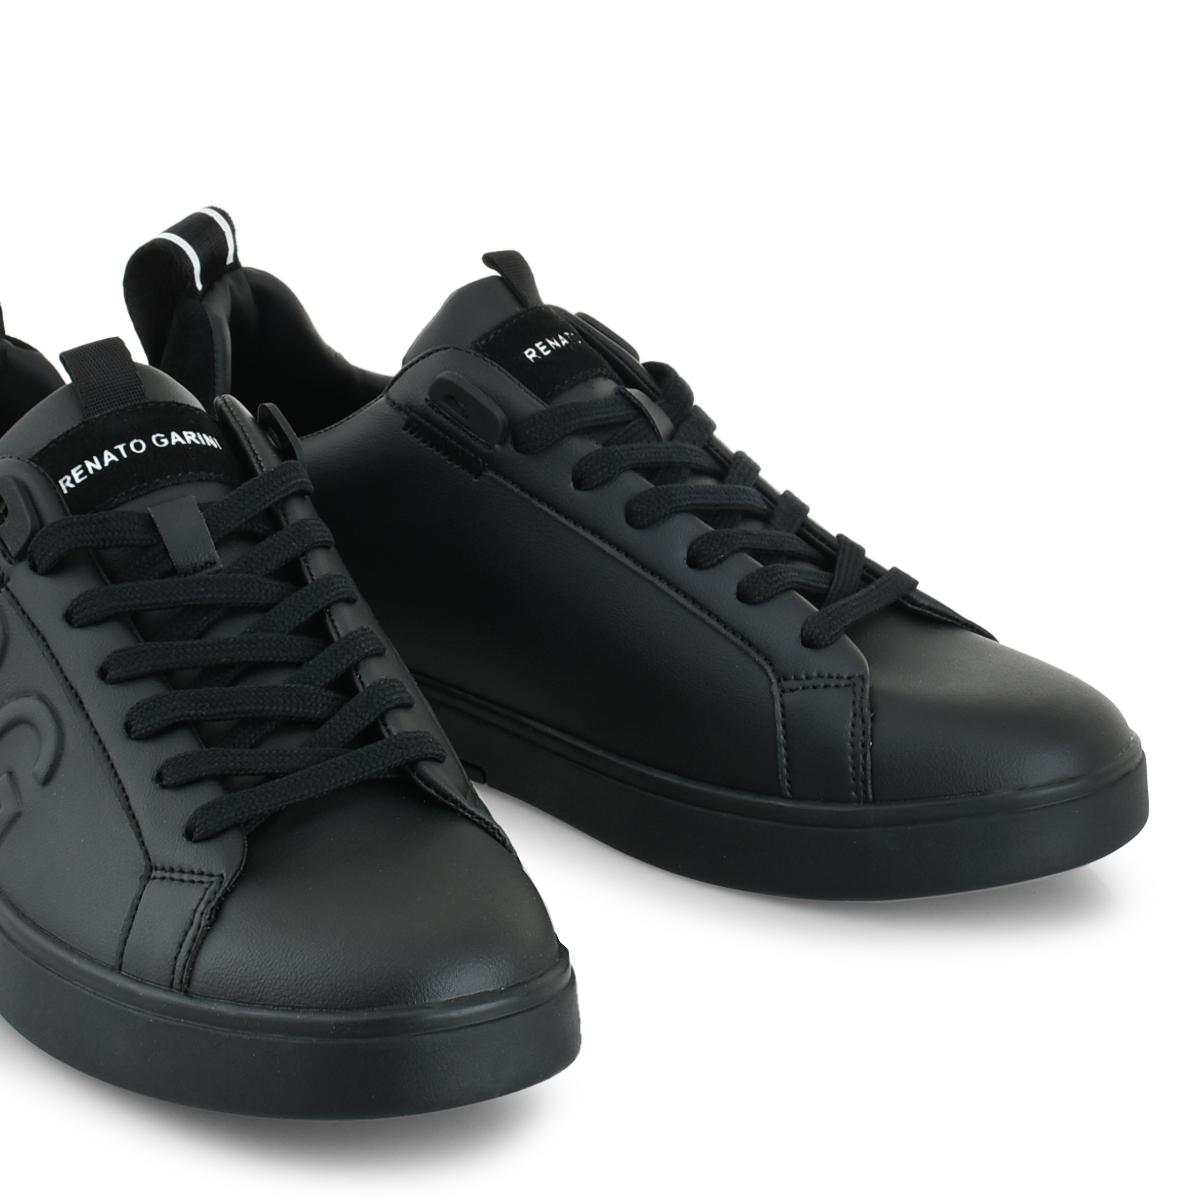 Ανρδικό Sneaker μαύρο Renato Garini  R57004561001